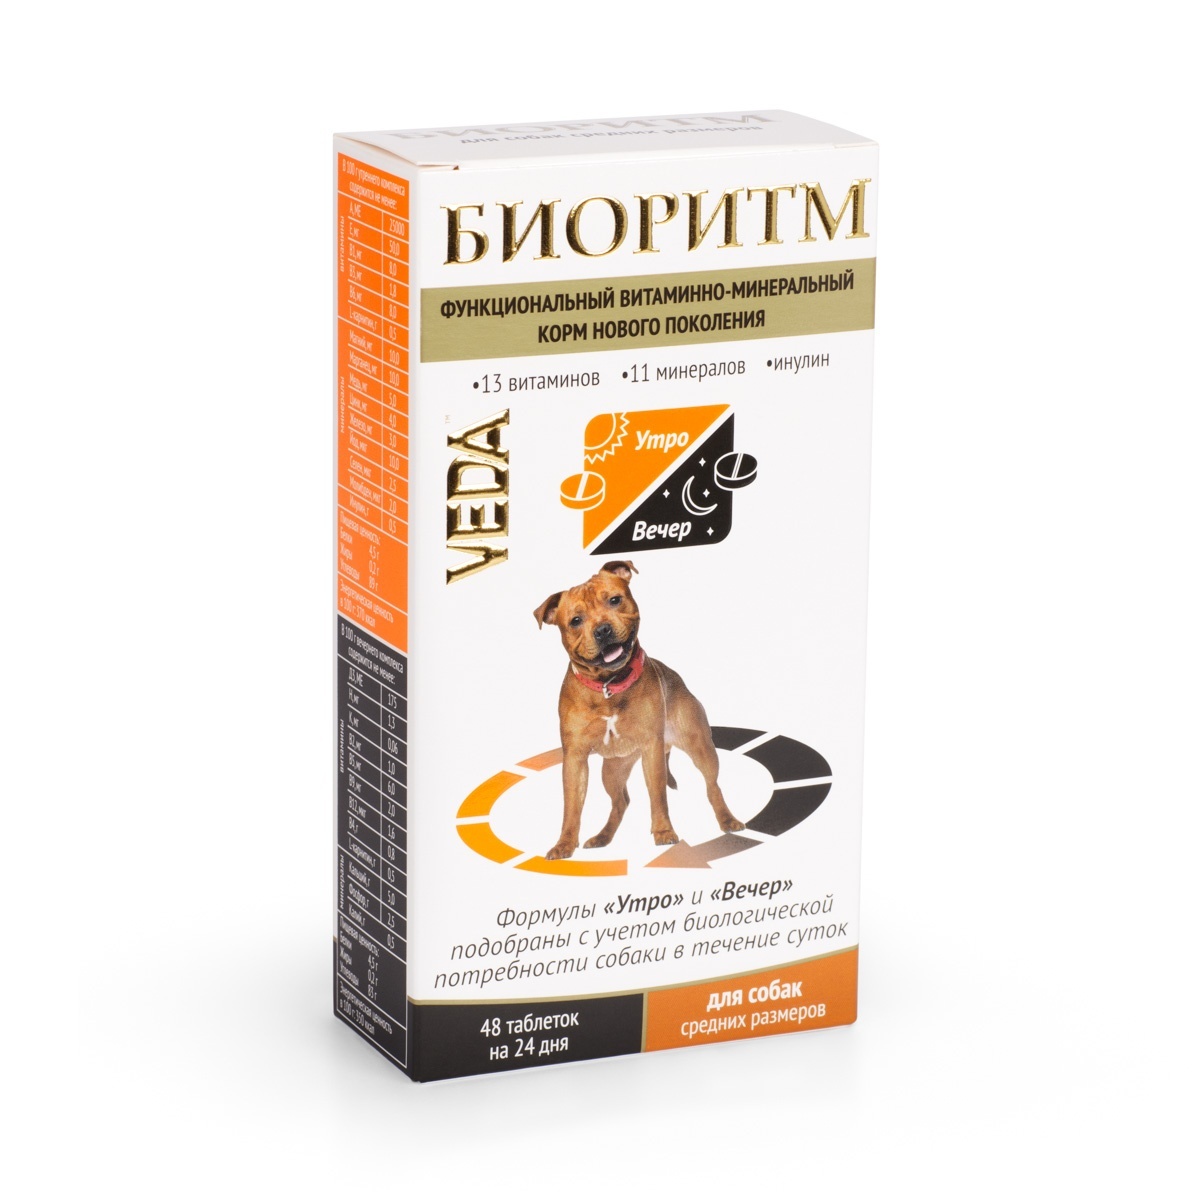 Веда Веда биоритм витамины для собак средних пород (20 г) веда веда шампунь для жесткошерстных собак 220 г